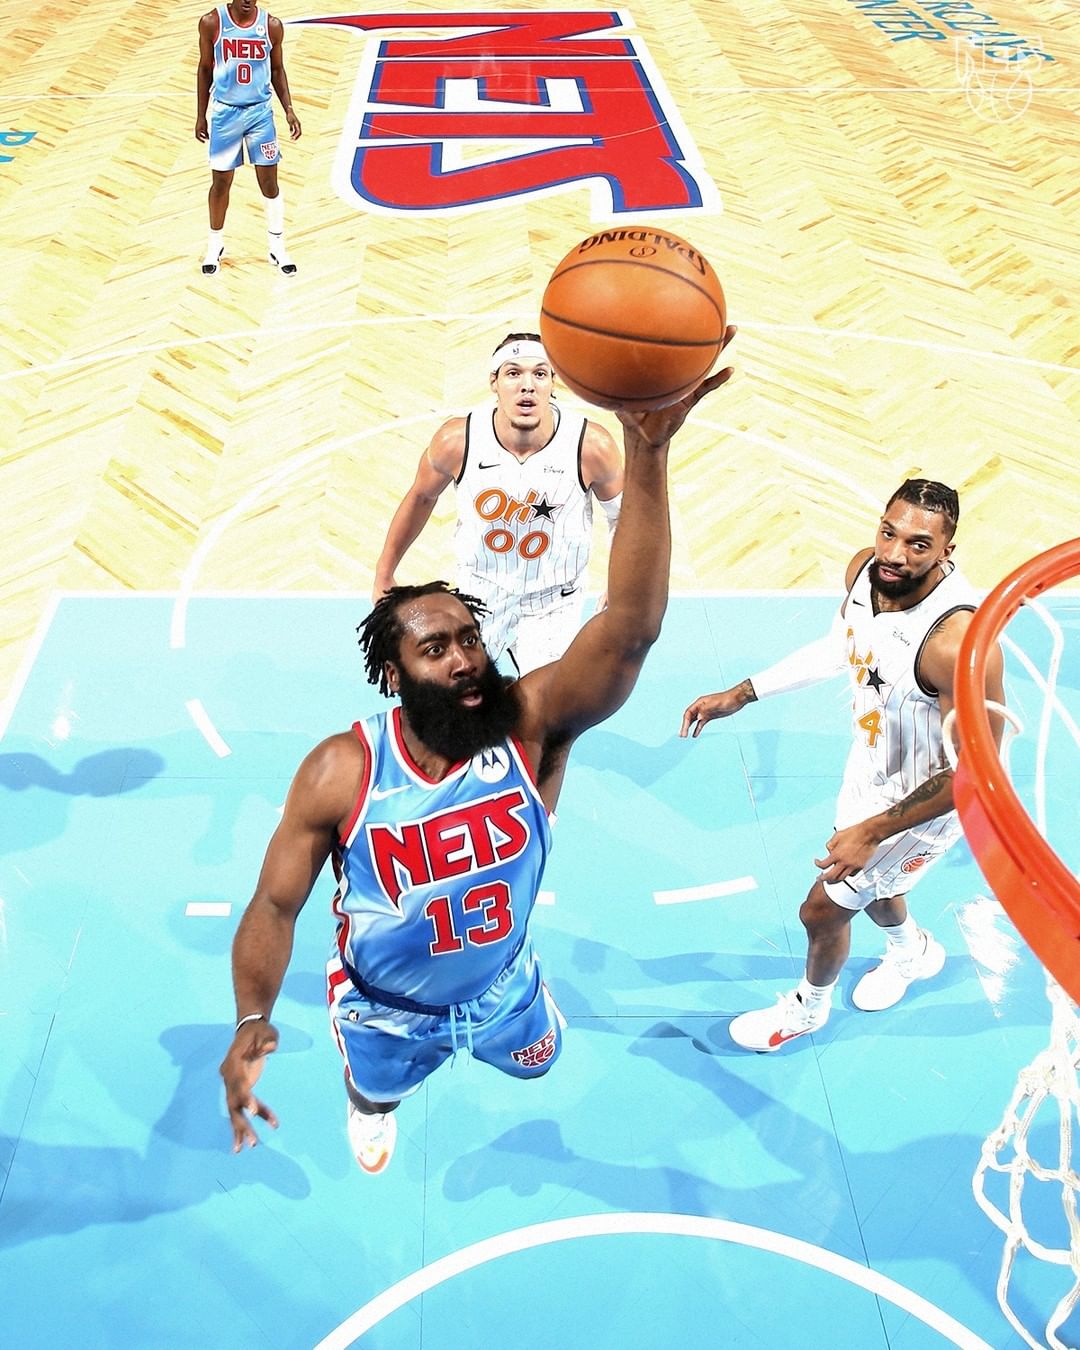 Knicks querem revisão por erro em jogo contra os Rockets